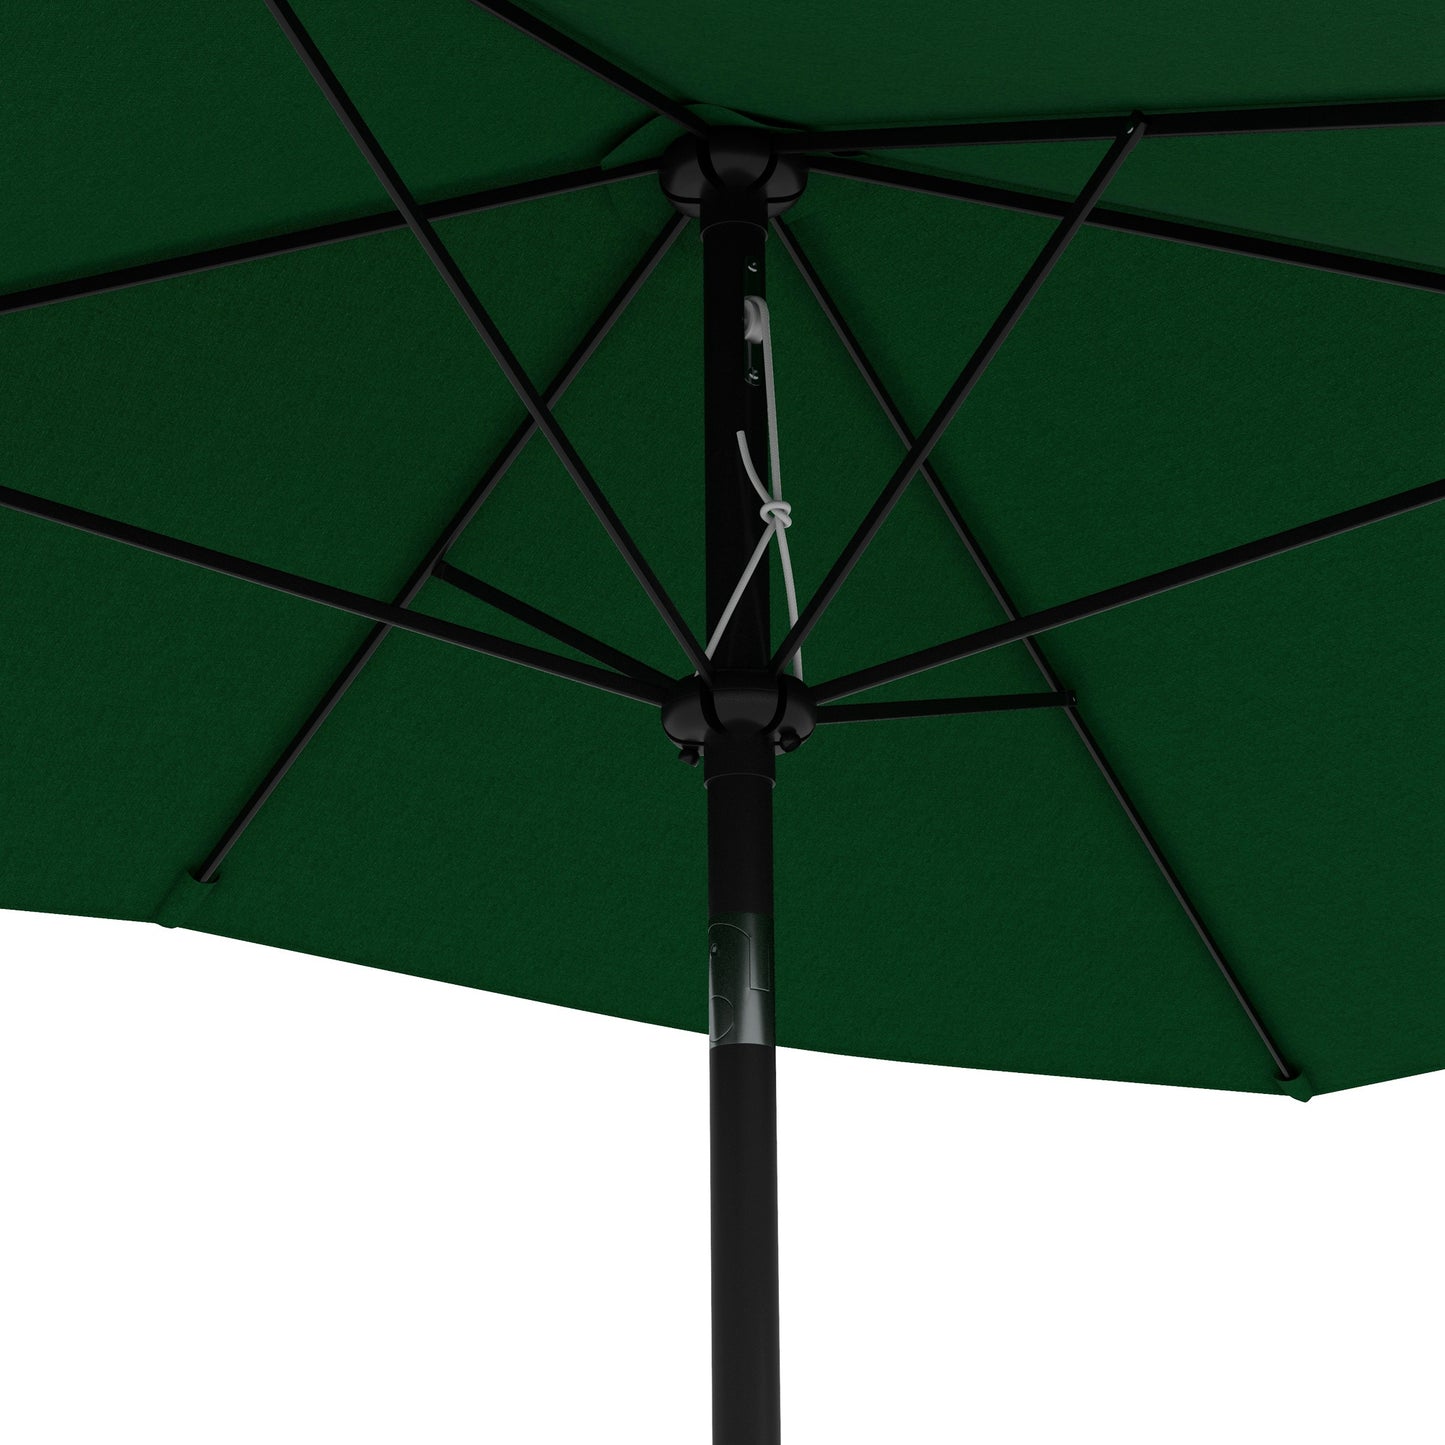 Outsunny Rectangular Outdoor Parasol Market Umbrella with Crank & Push Button Tilt, 6 Ribs, Aluminium Pole, 2 x 3(m), Green